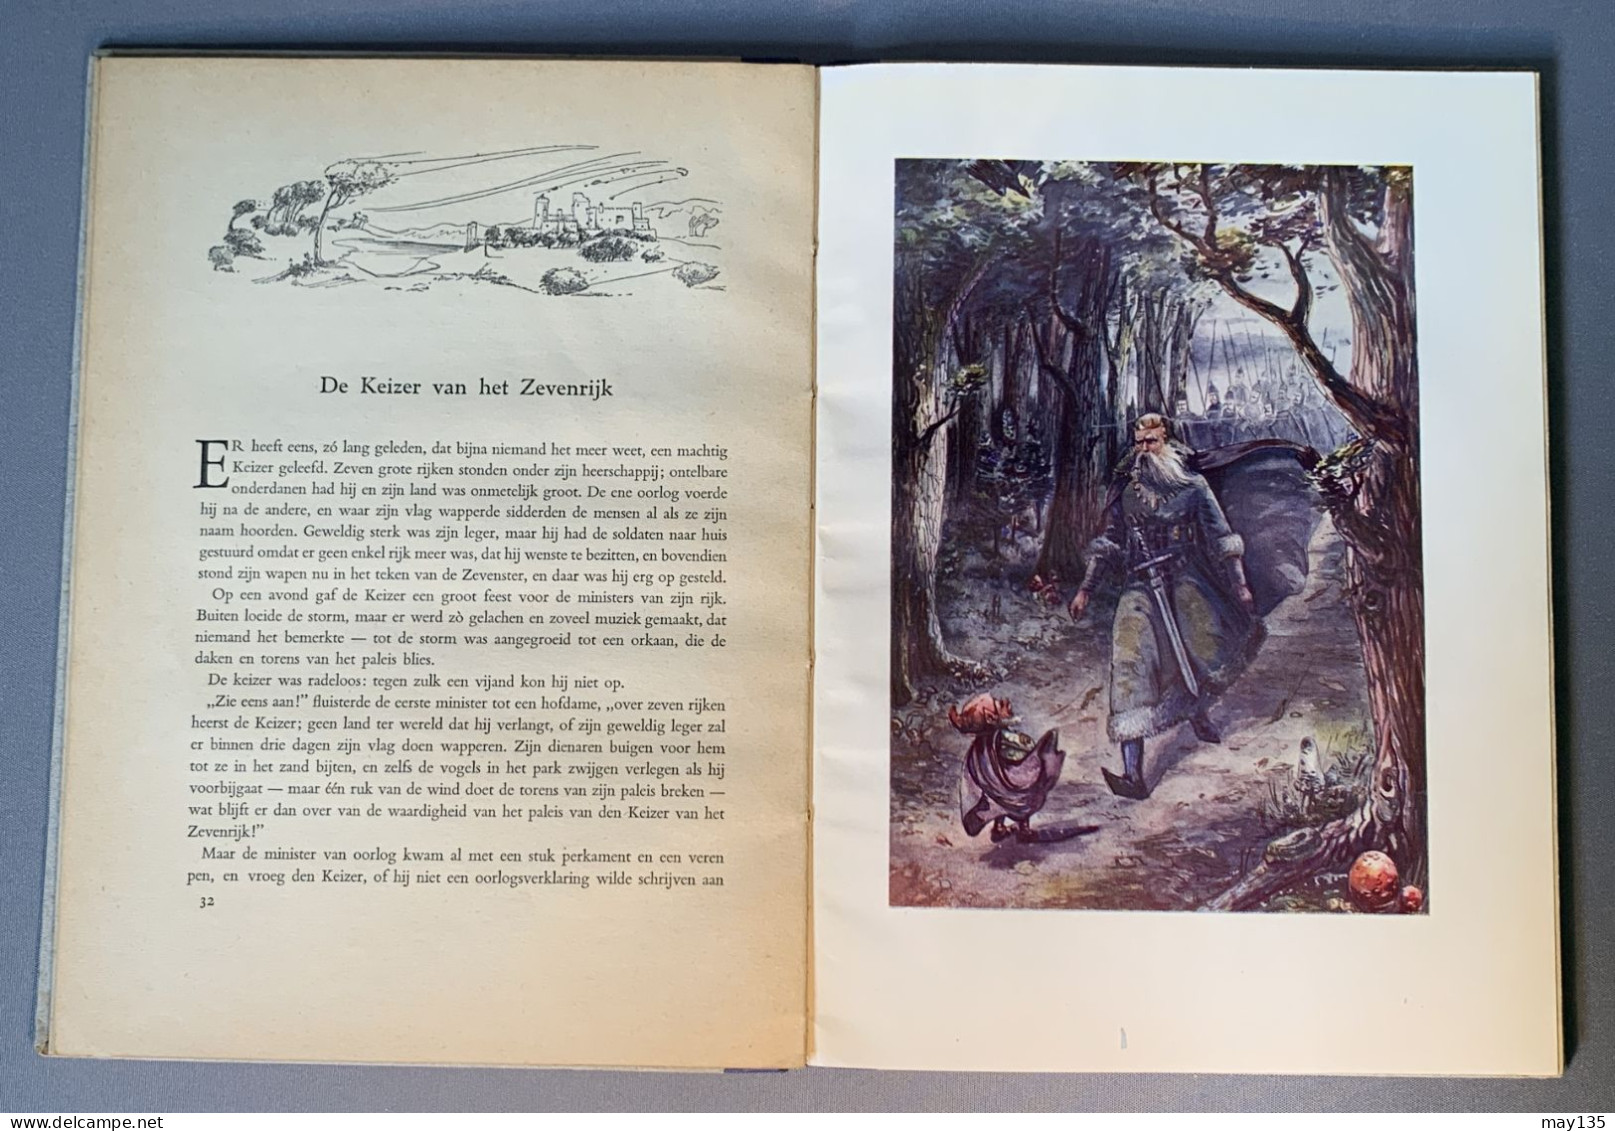 Anno 1946 - Sprookjes Door Frederieke Laagland - 19 Sprookjes Met Illustraties - Antique